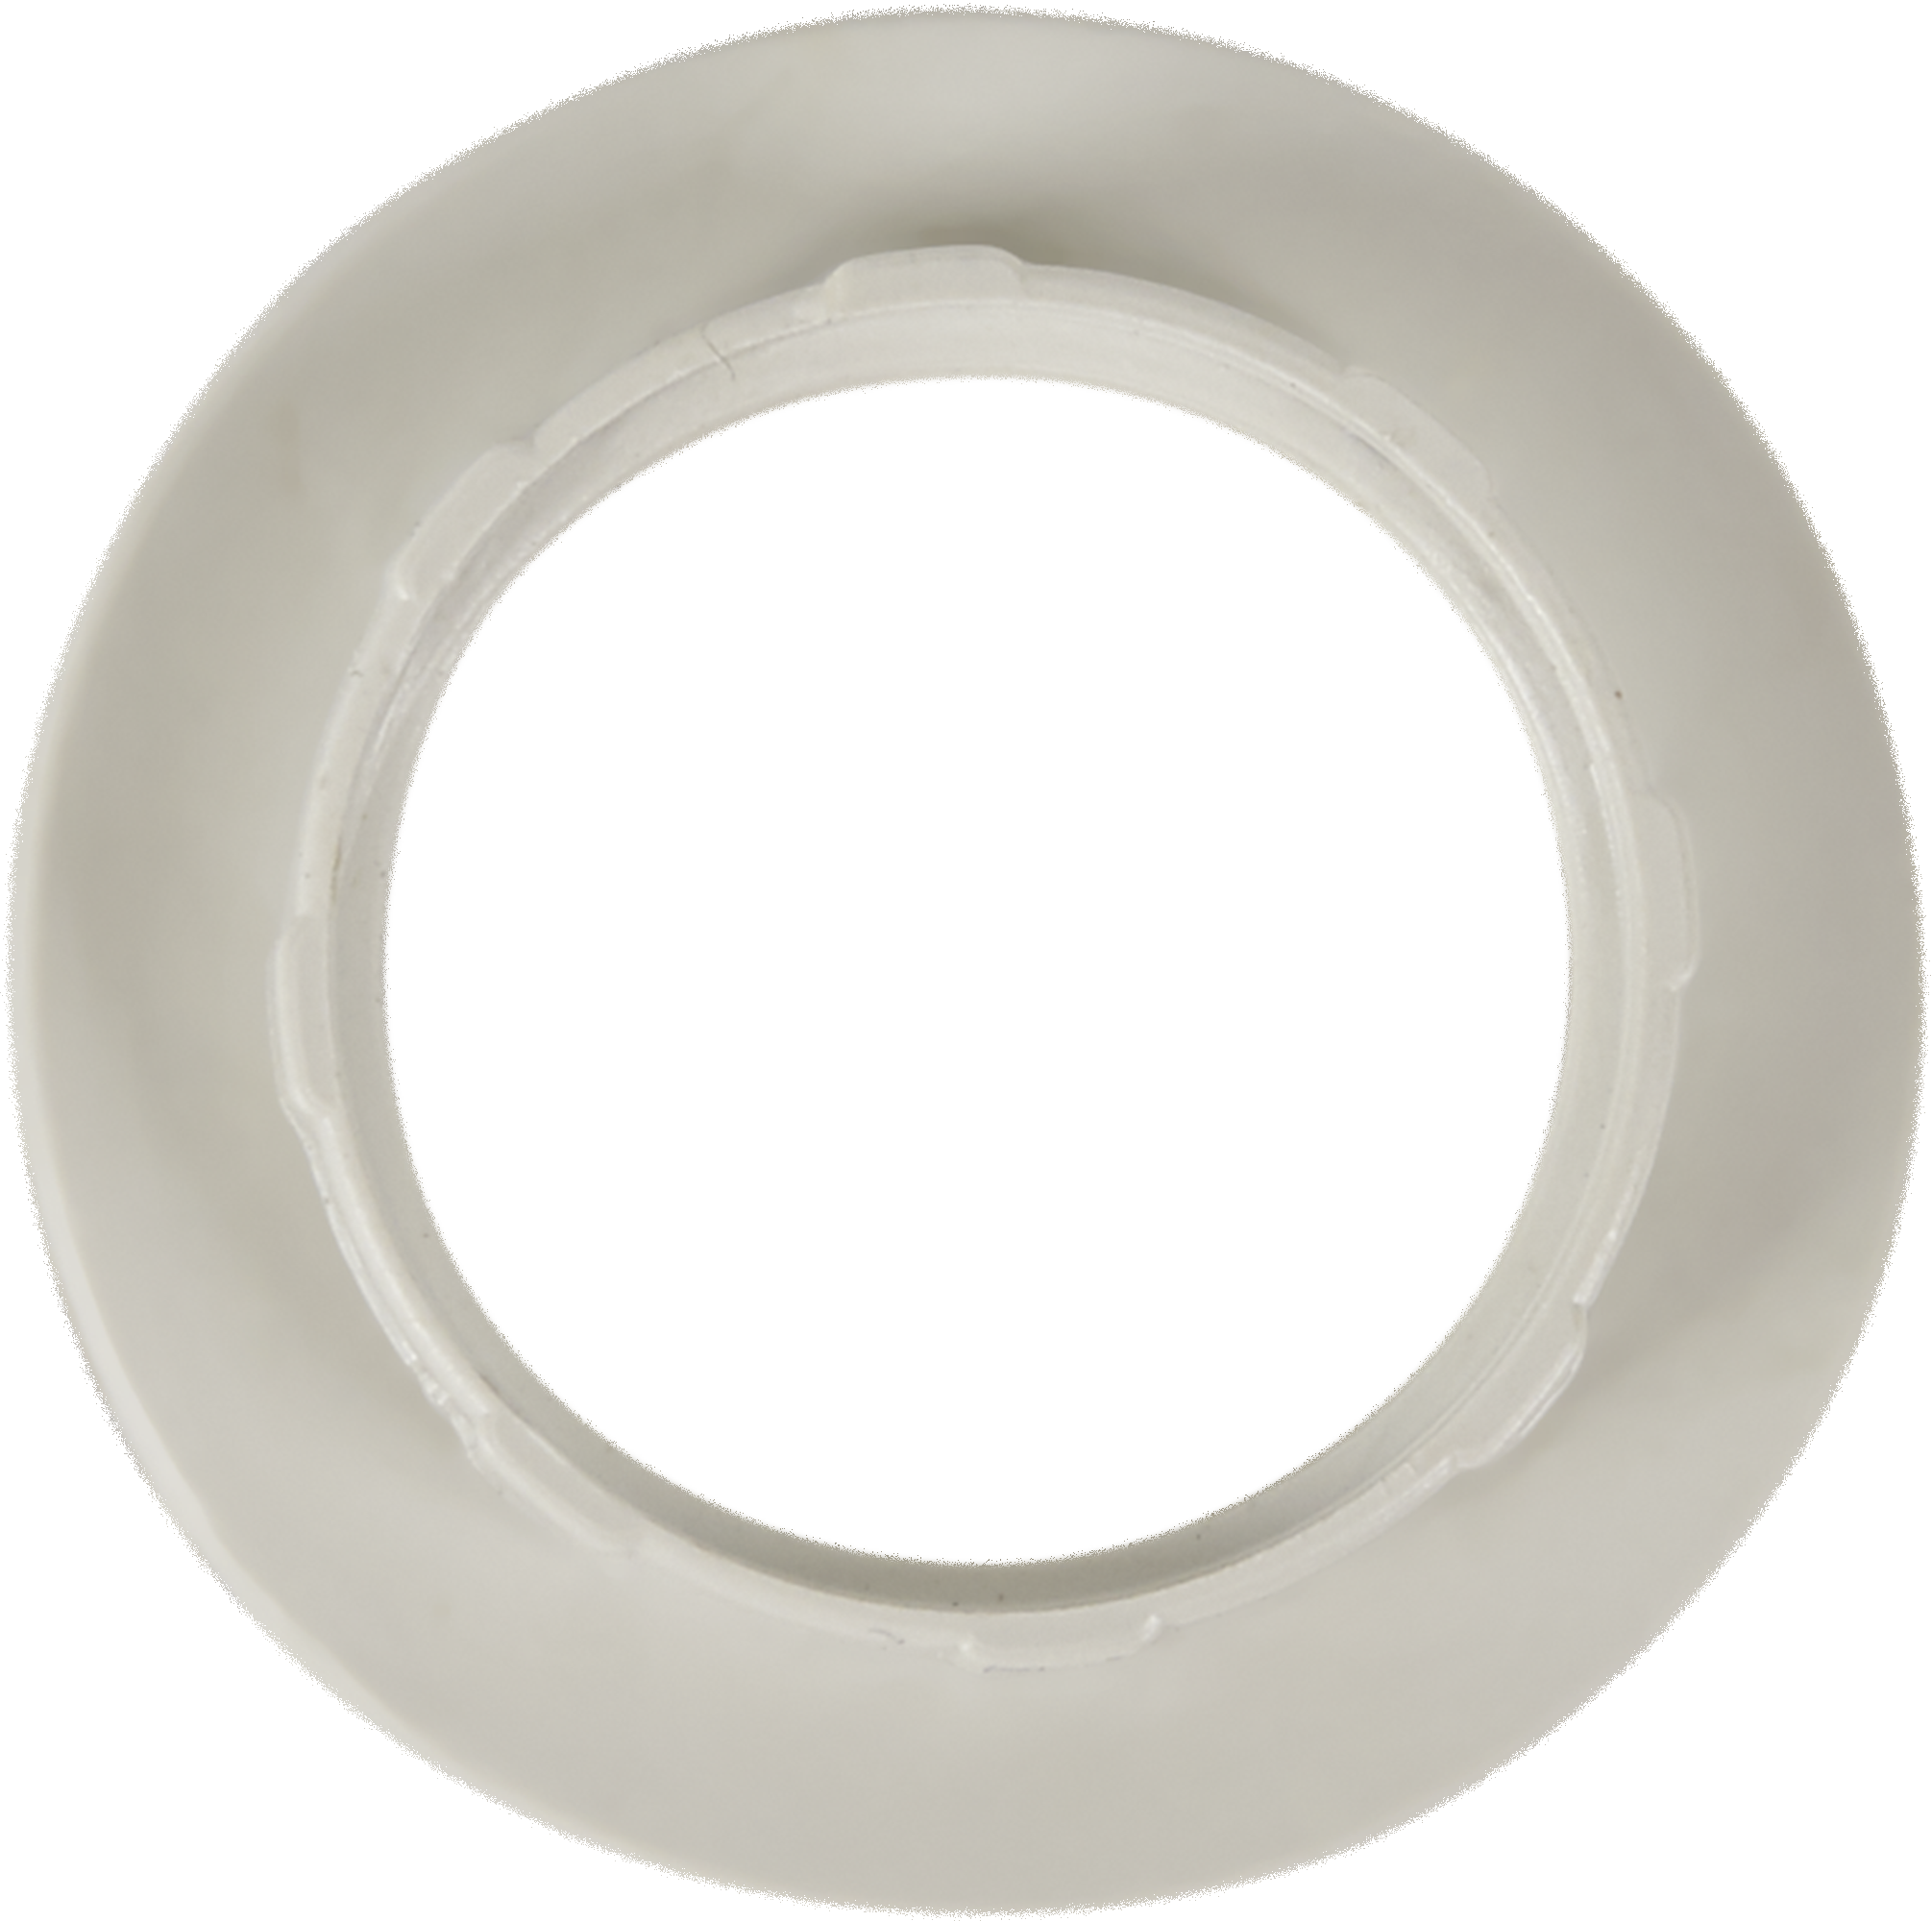  крепёжное Oxion для патрона Е14 цвет белый по цене 17 ₽/шт .